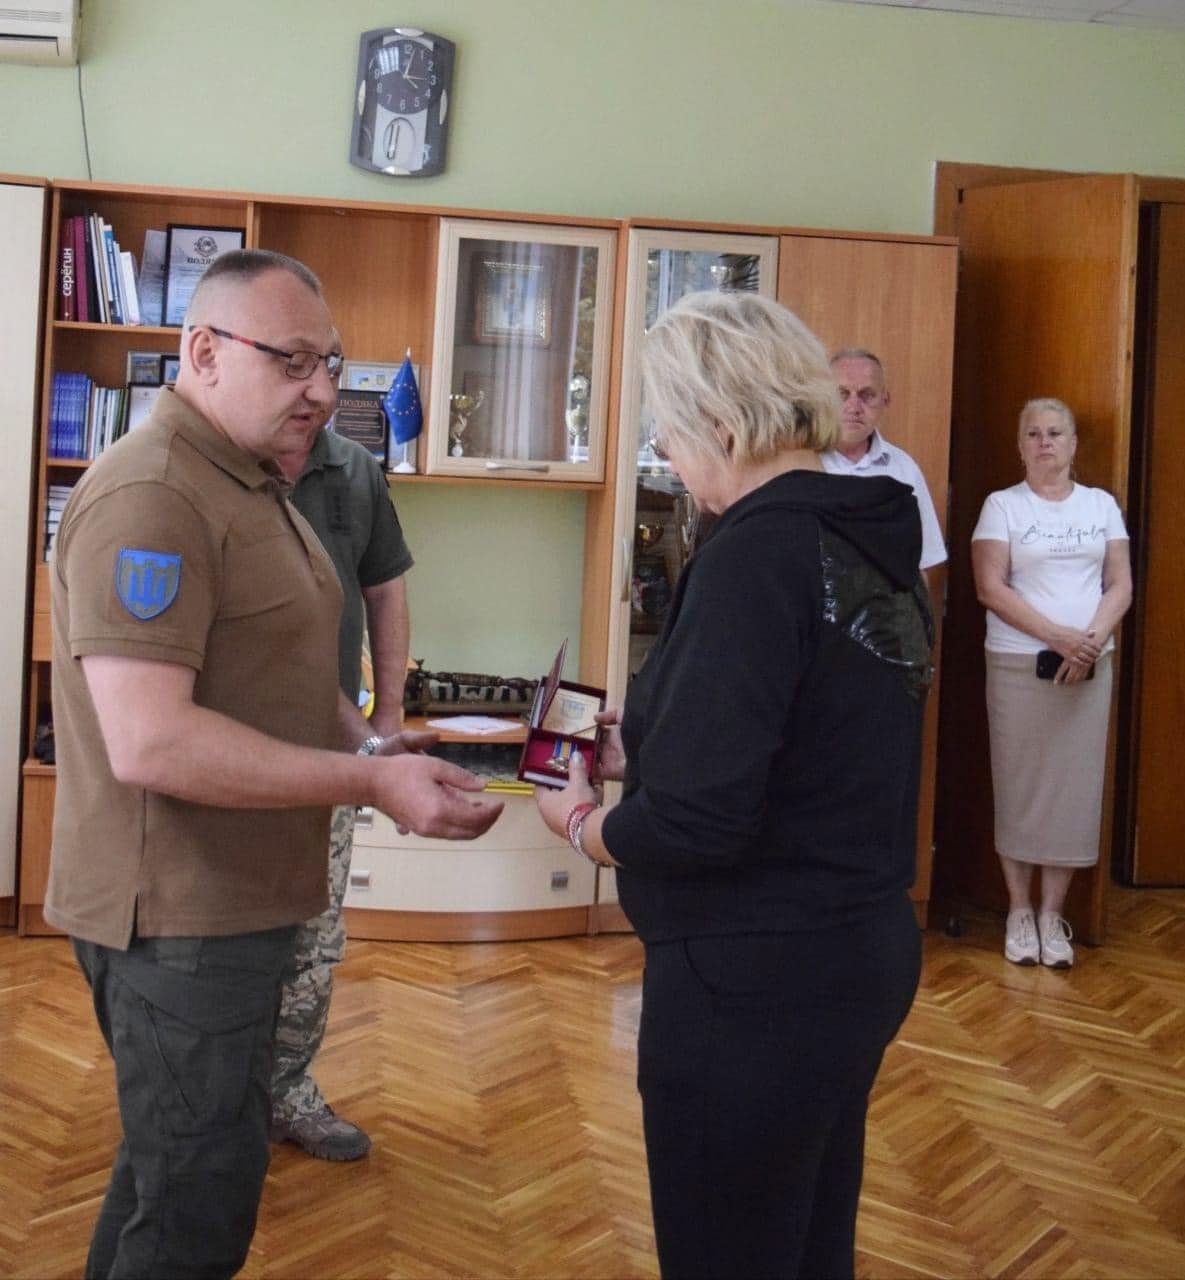 Трьох синів Буковини посмертно відзначили орденами «За мужність» III ступеня